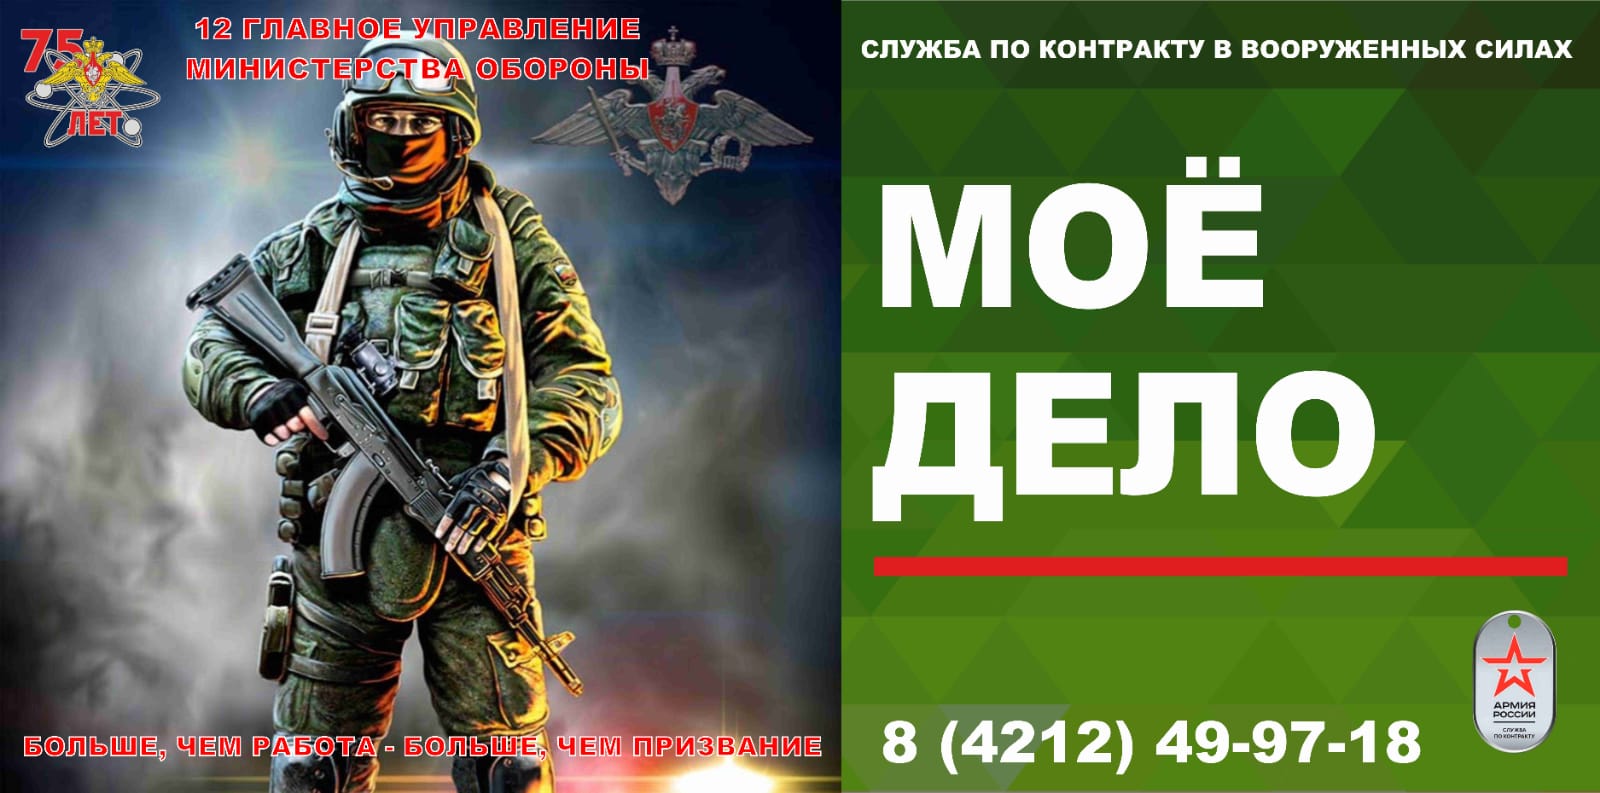 На военную службу, в 304 Базу хранения и ремонта средств связи, г. Хабаровск-47 требуются водители